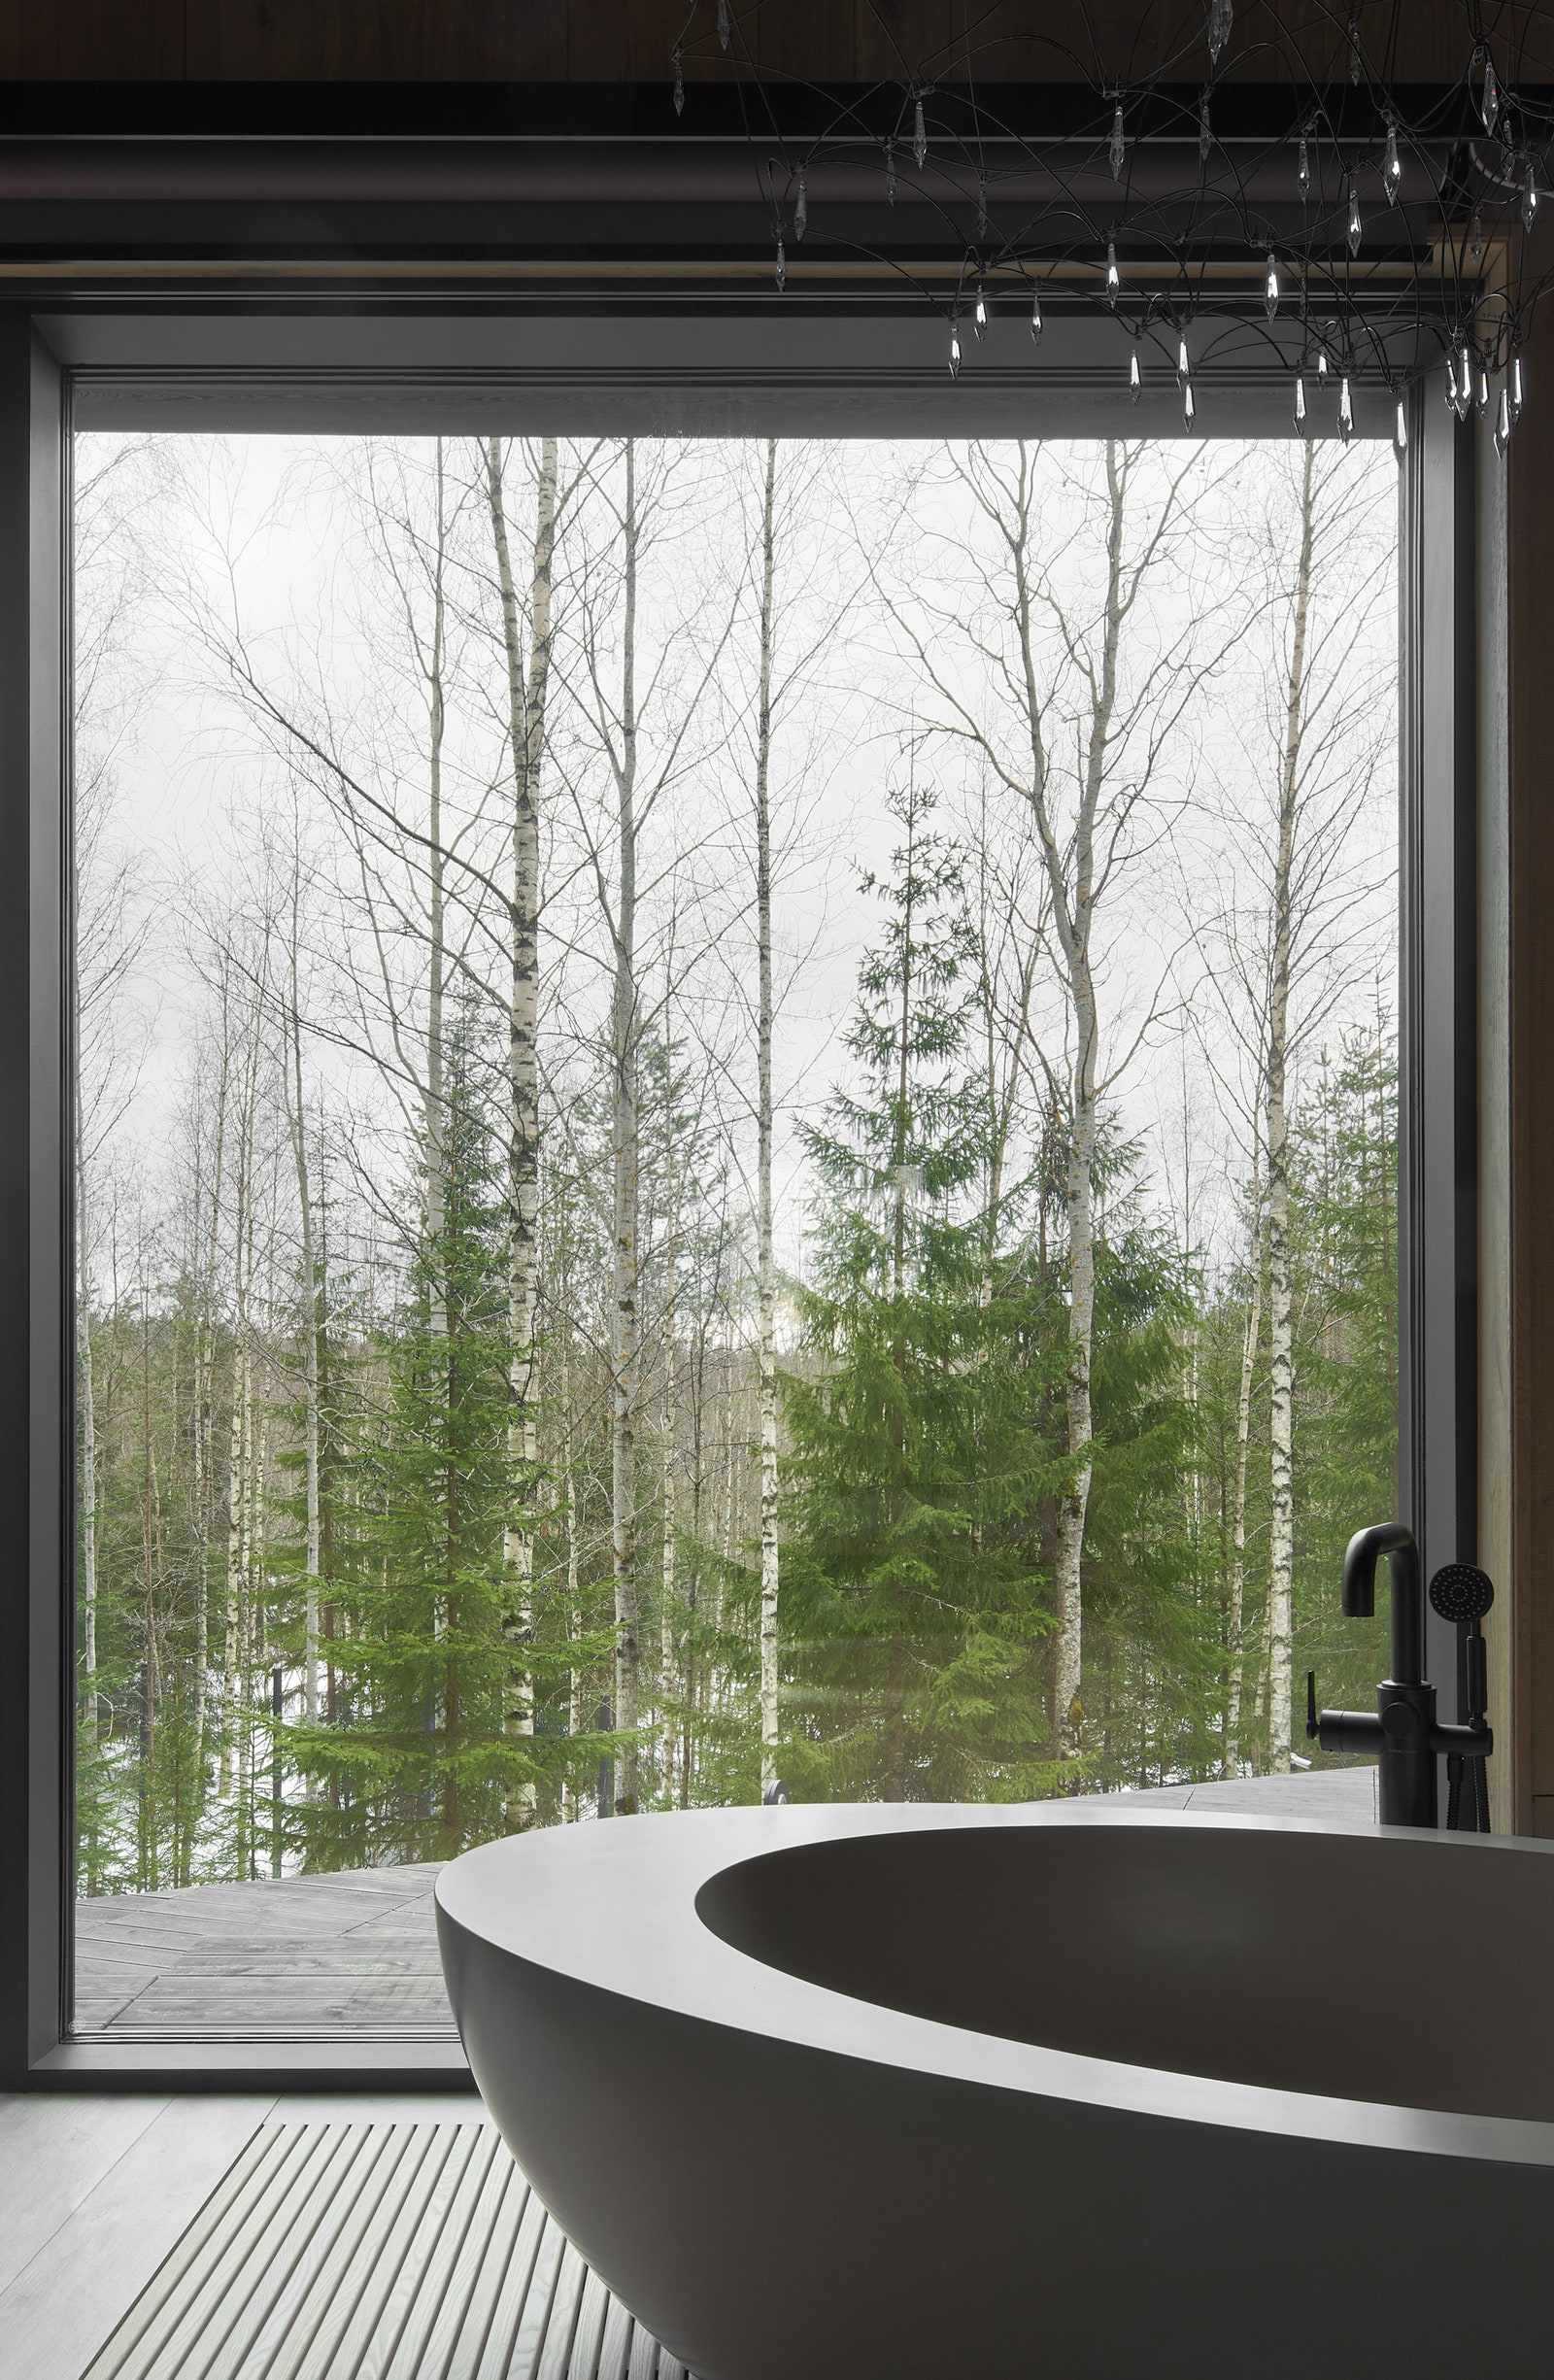 Дом с панорамными окнами по проекту Horomystudio. Принимая ванну можно любоваться природой за окном. Смеситель Samuel Heath.